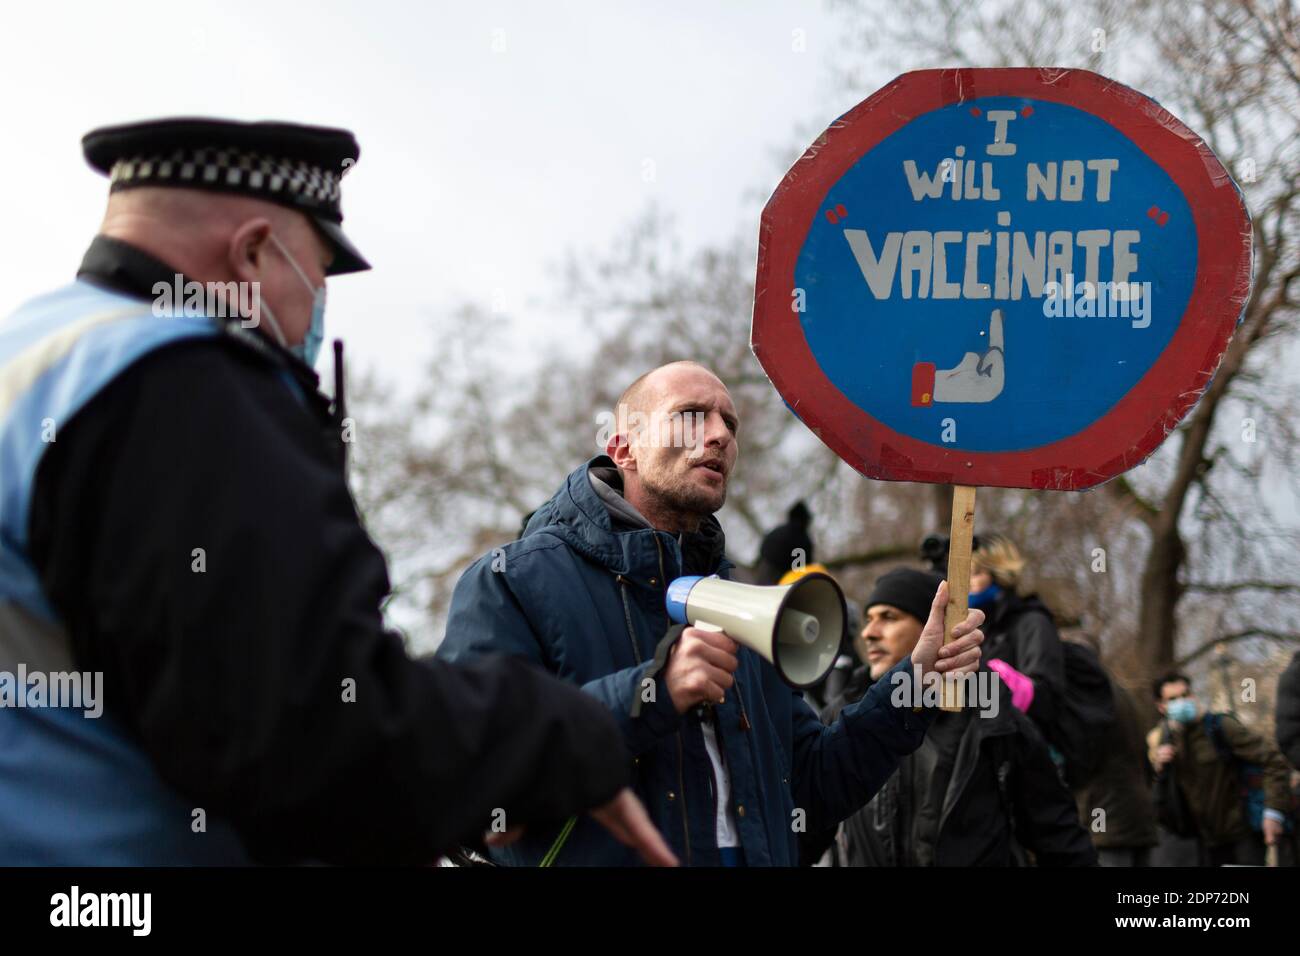 Manifestante sosteniendo un cartel de "no voy a vacunar" durante la protesta contra la vacuna COVID-19, Parliament Square, Londres, 14 de diciembre de 2020 Foto de stock